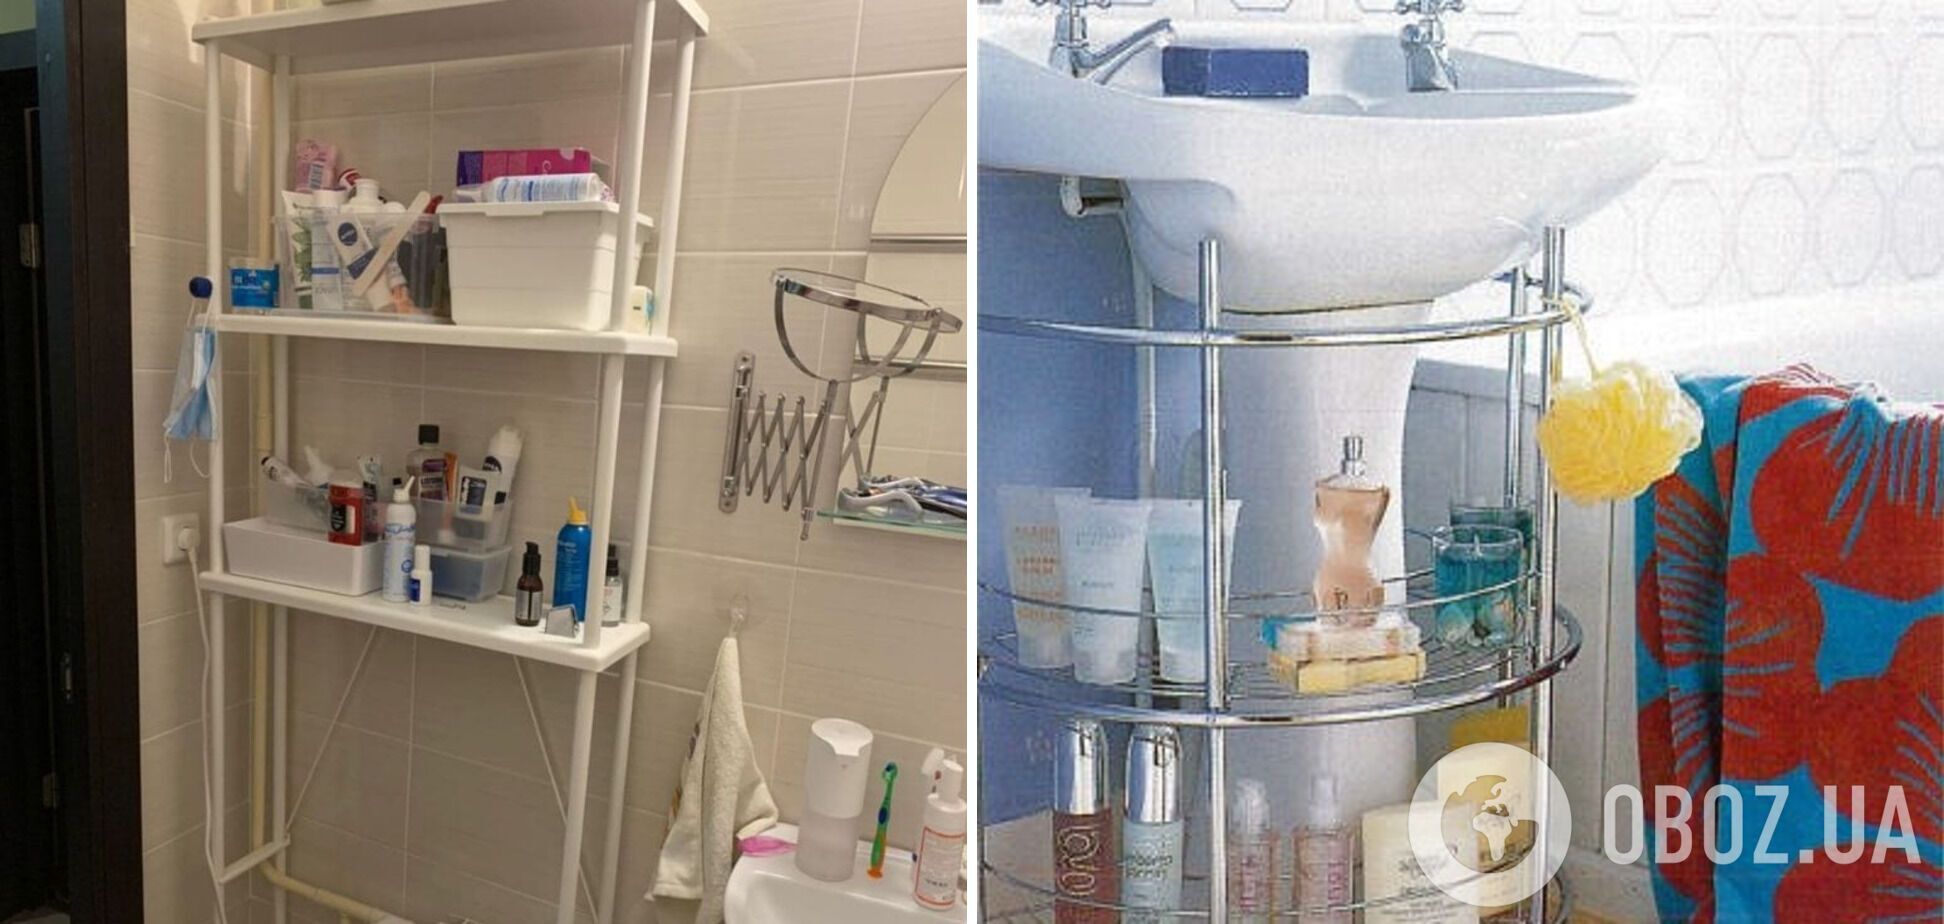 Открытые полки со средствами бытовой химии и полотенцами забирают много места в ванной комнате.